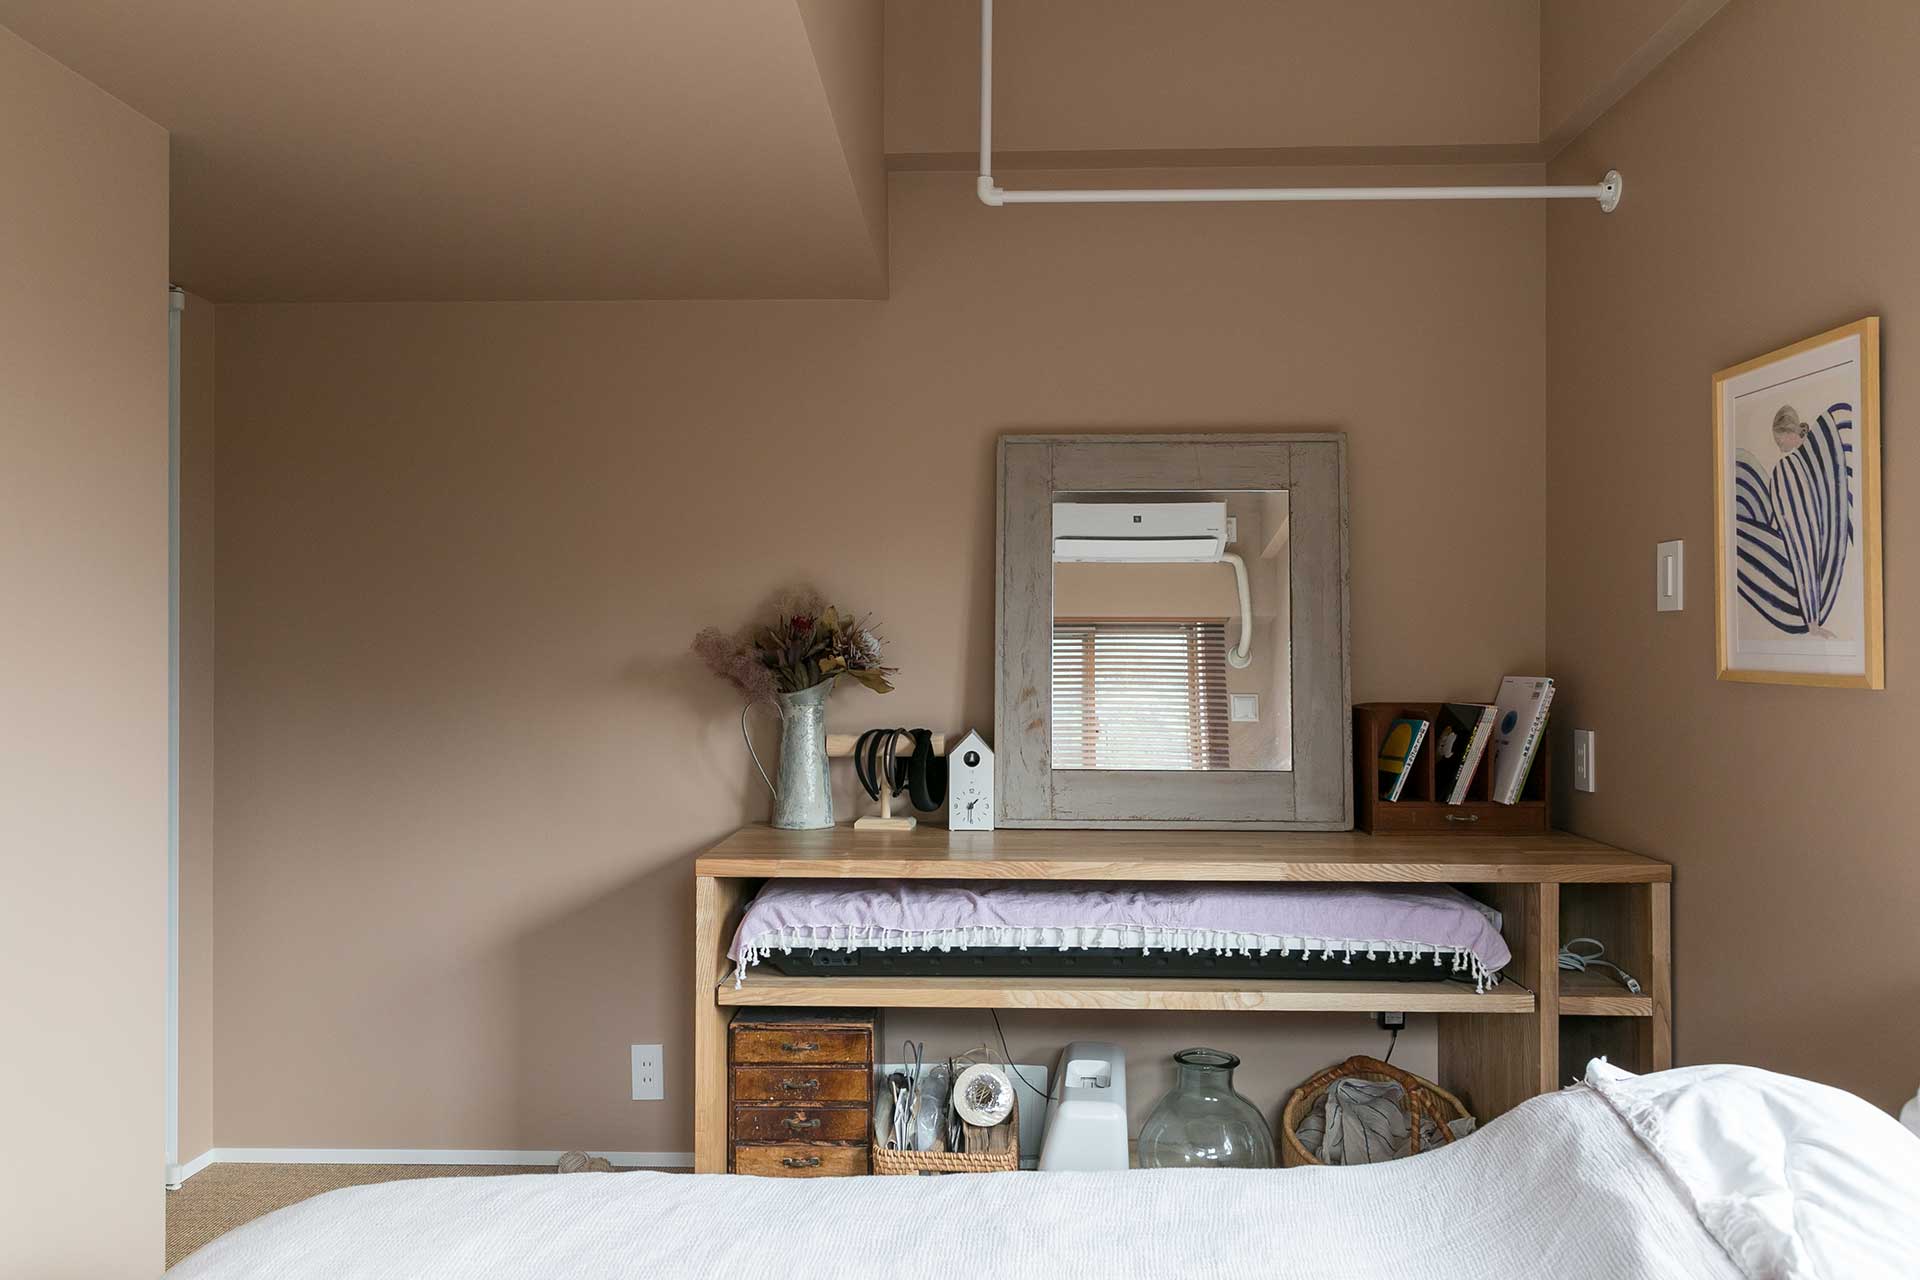 寝室にある造作カウンターは、天井につけられたポールを活用してアイロンがけをしたり、下部にあるスライドを引いて電子ピアノを出して弾いたりできる優れもの。